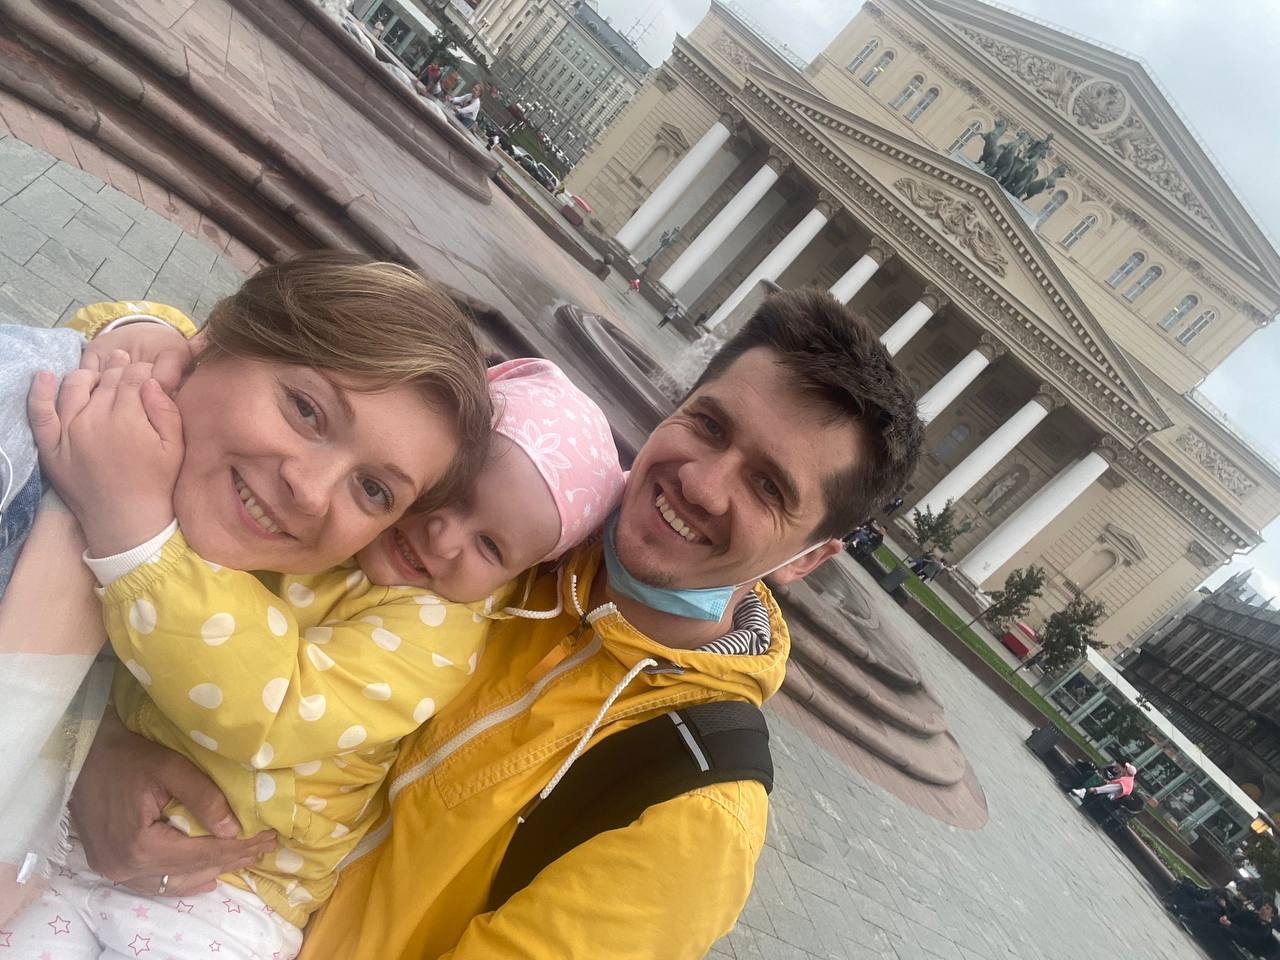 Дмитрий часто приезжал в Москву в перерывах между работой и навещал семью